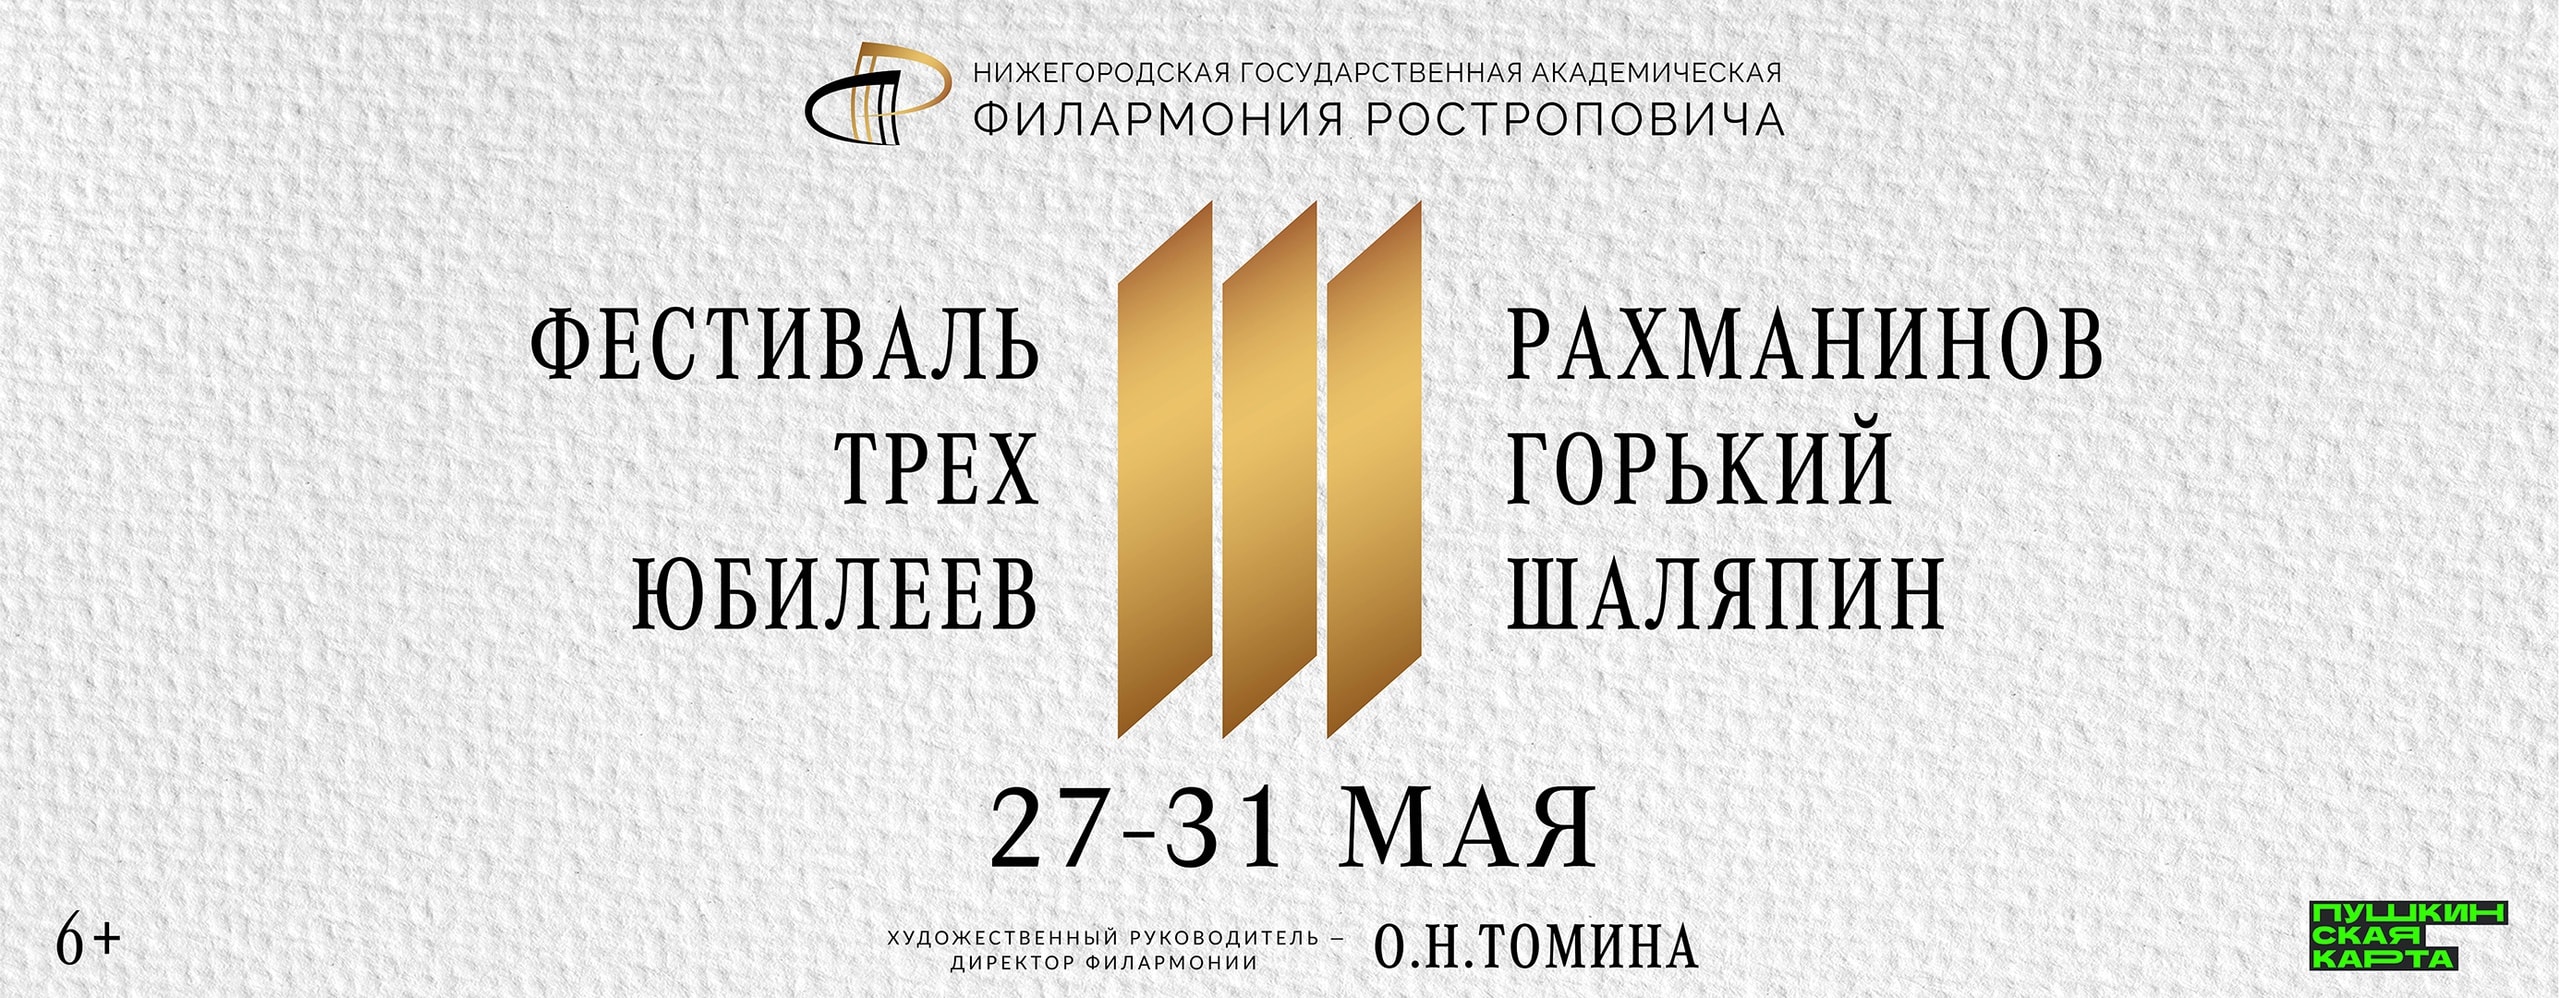 جشنواره سه سالگرد در فیلارمونیک نیژنی نووگورود برگزار می شود